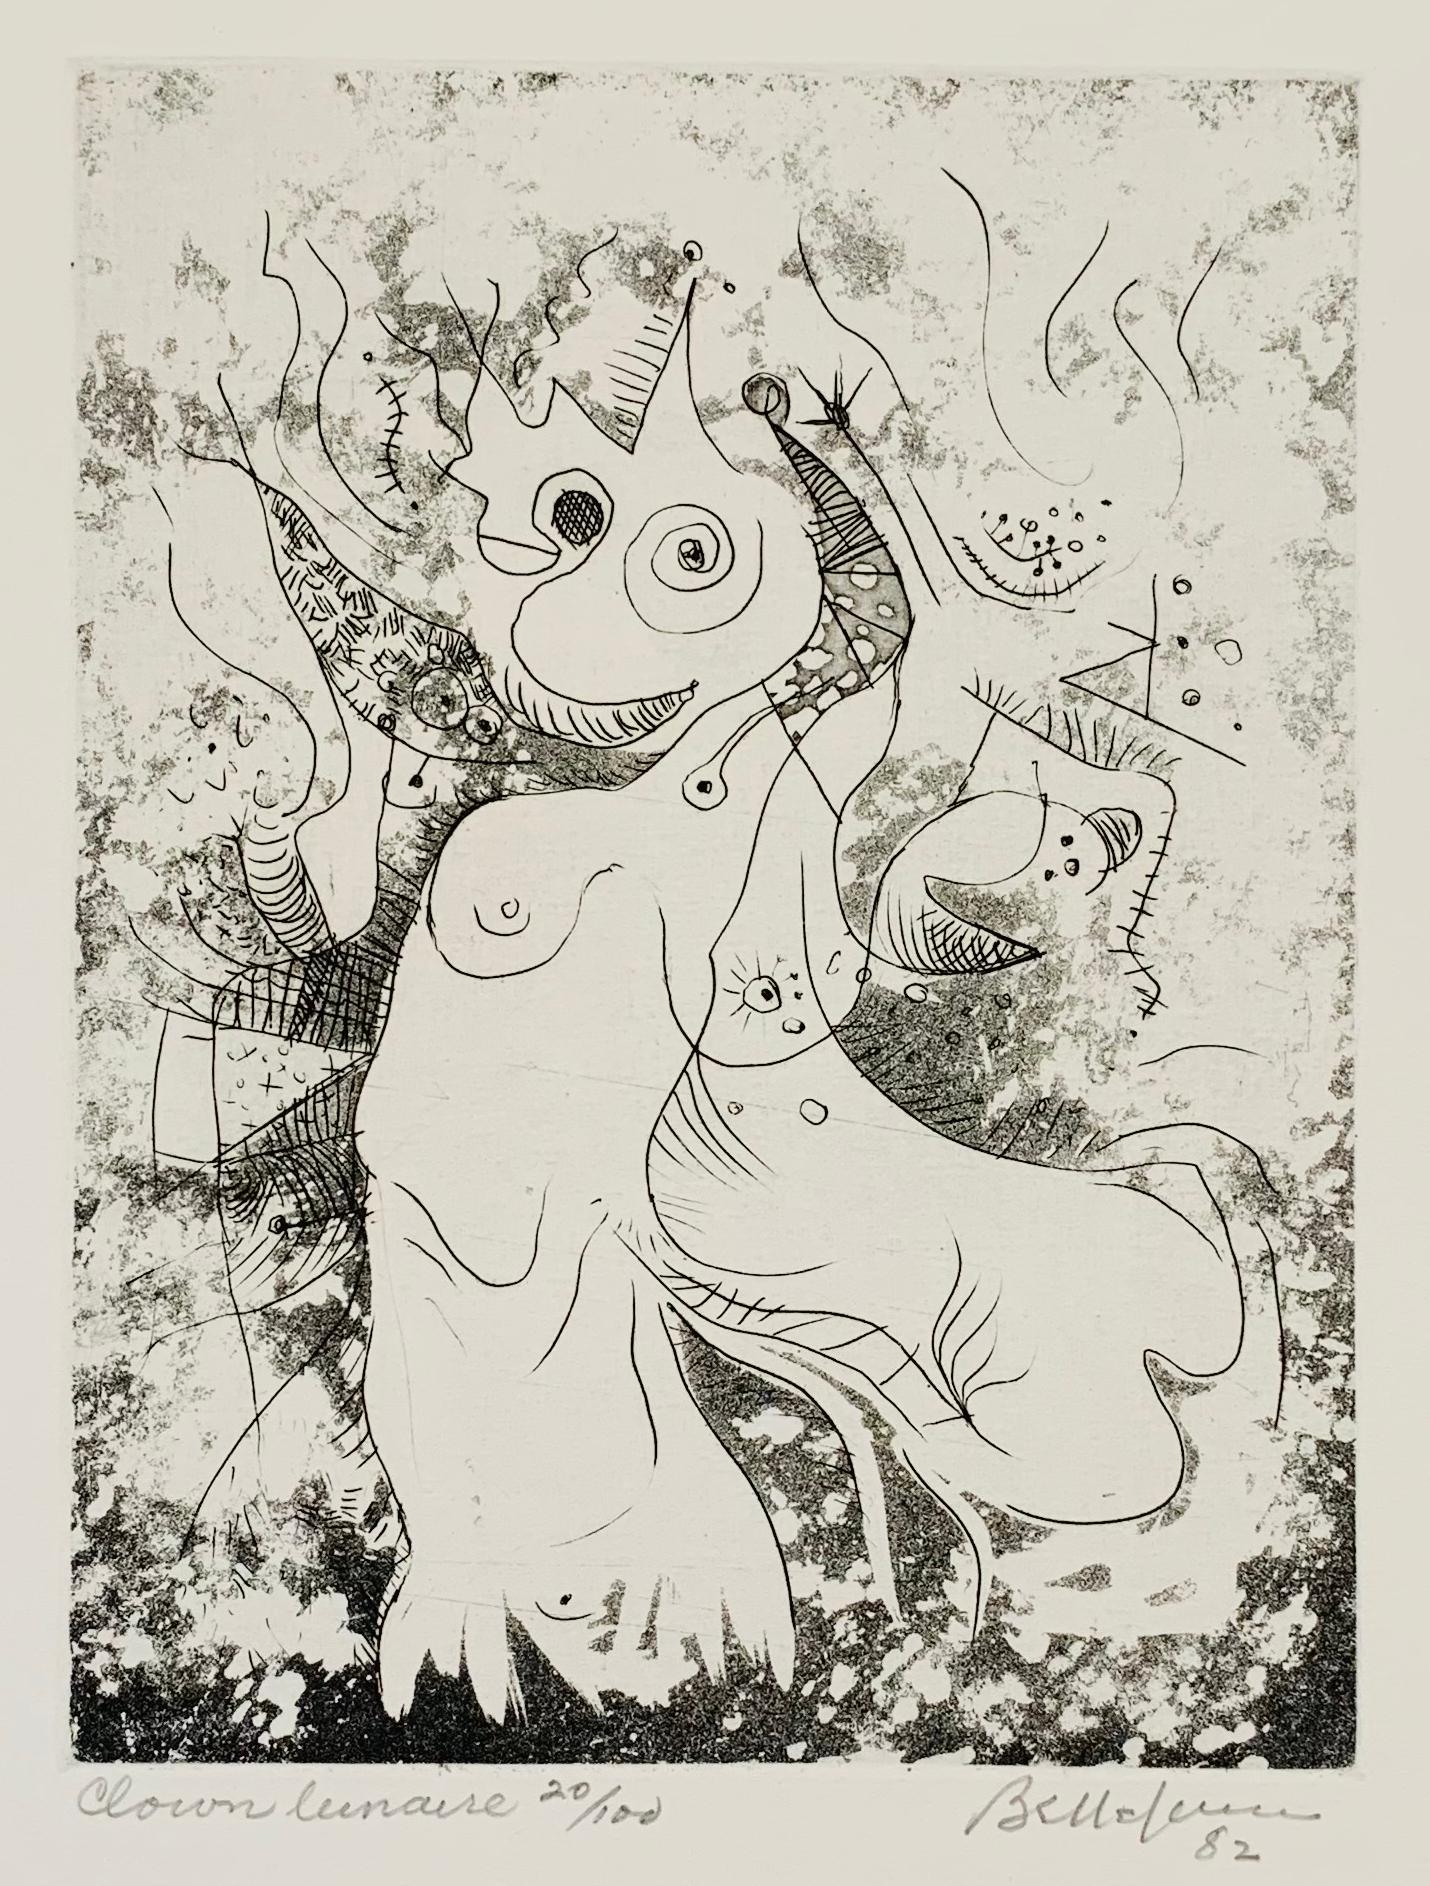 Léon Bellefleur Abstract Print - Clown lunaire